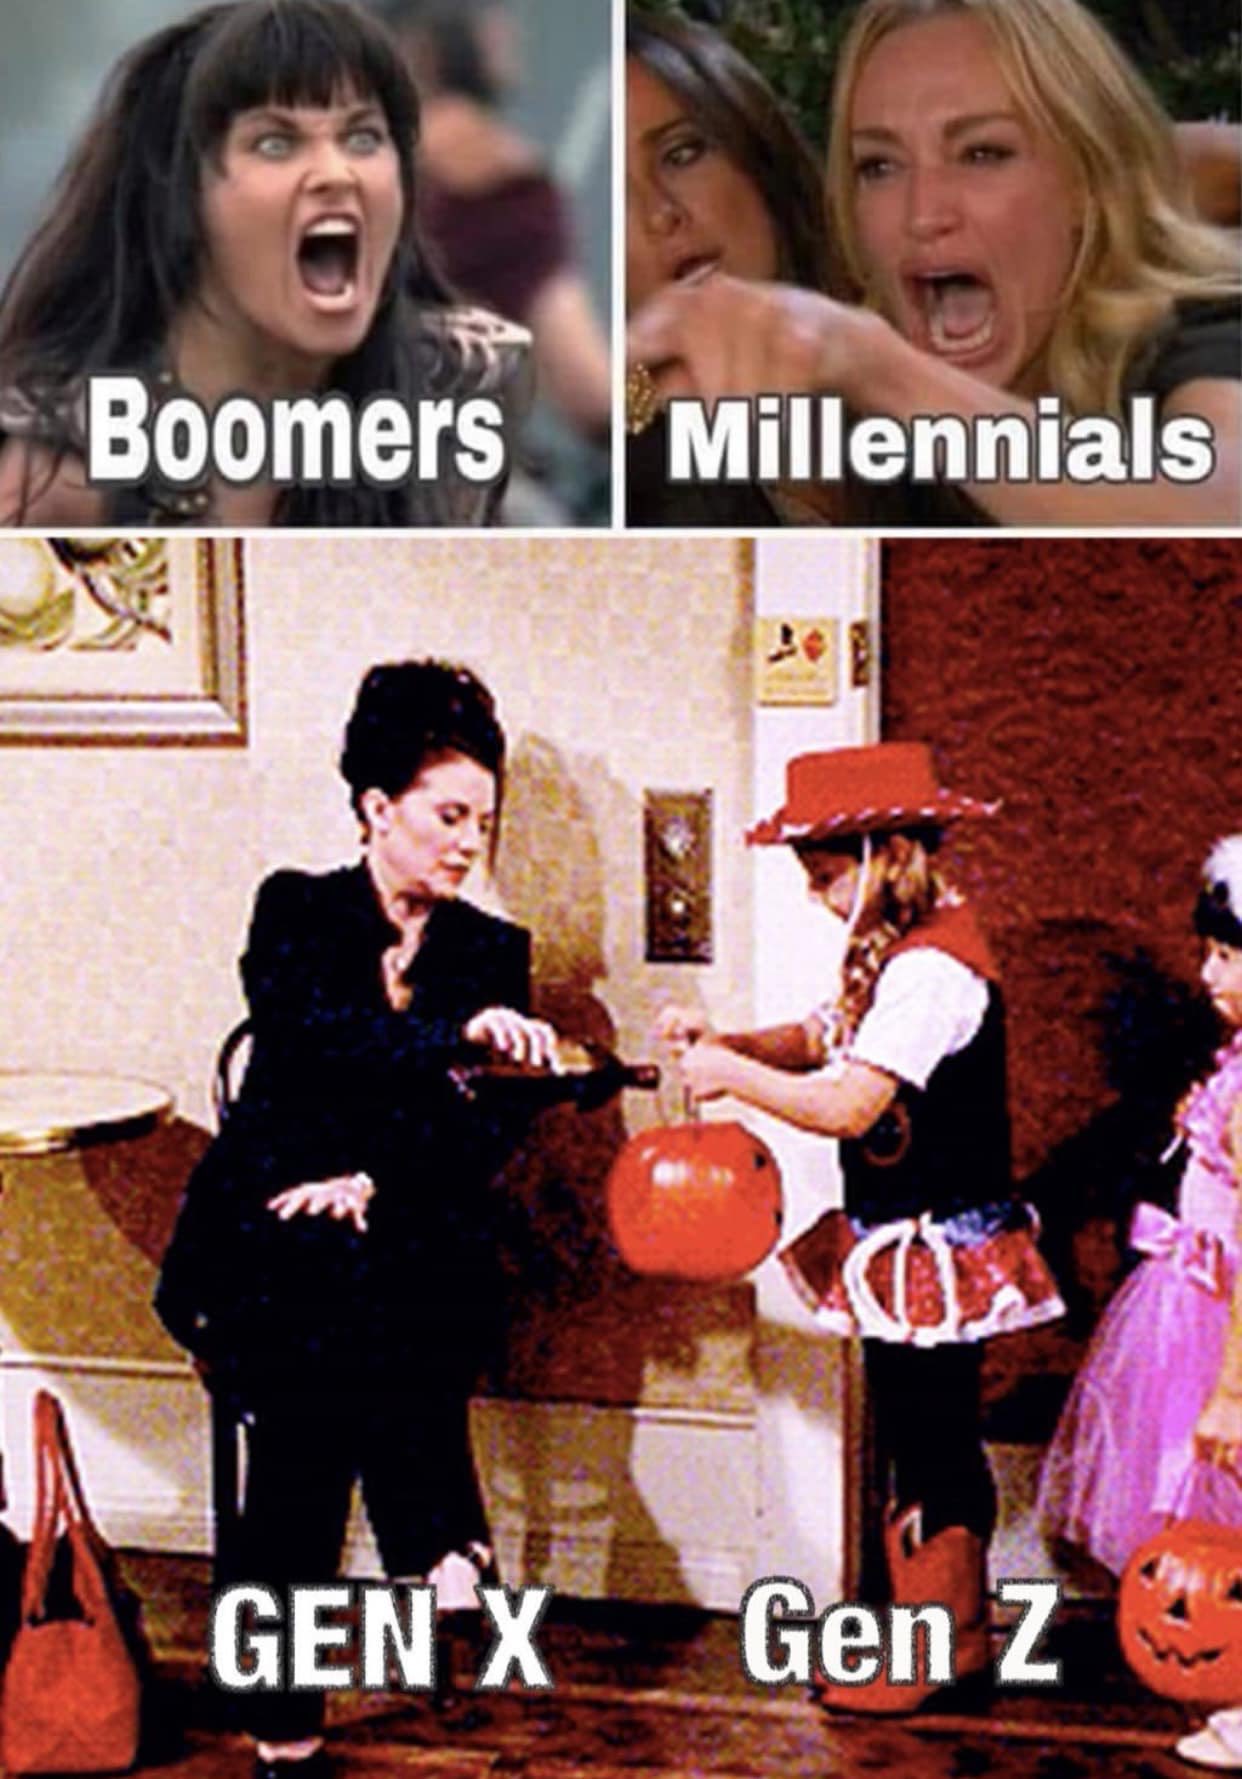 Boomers, Millennials, Gen X and Gen Z